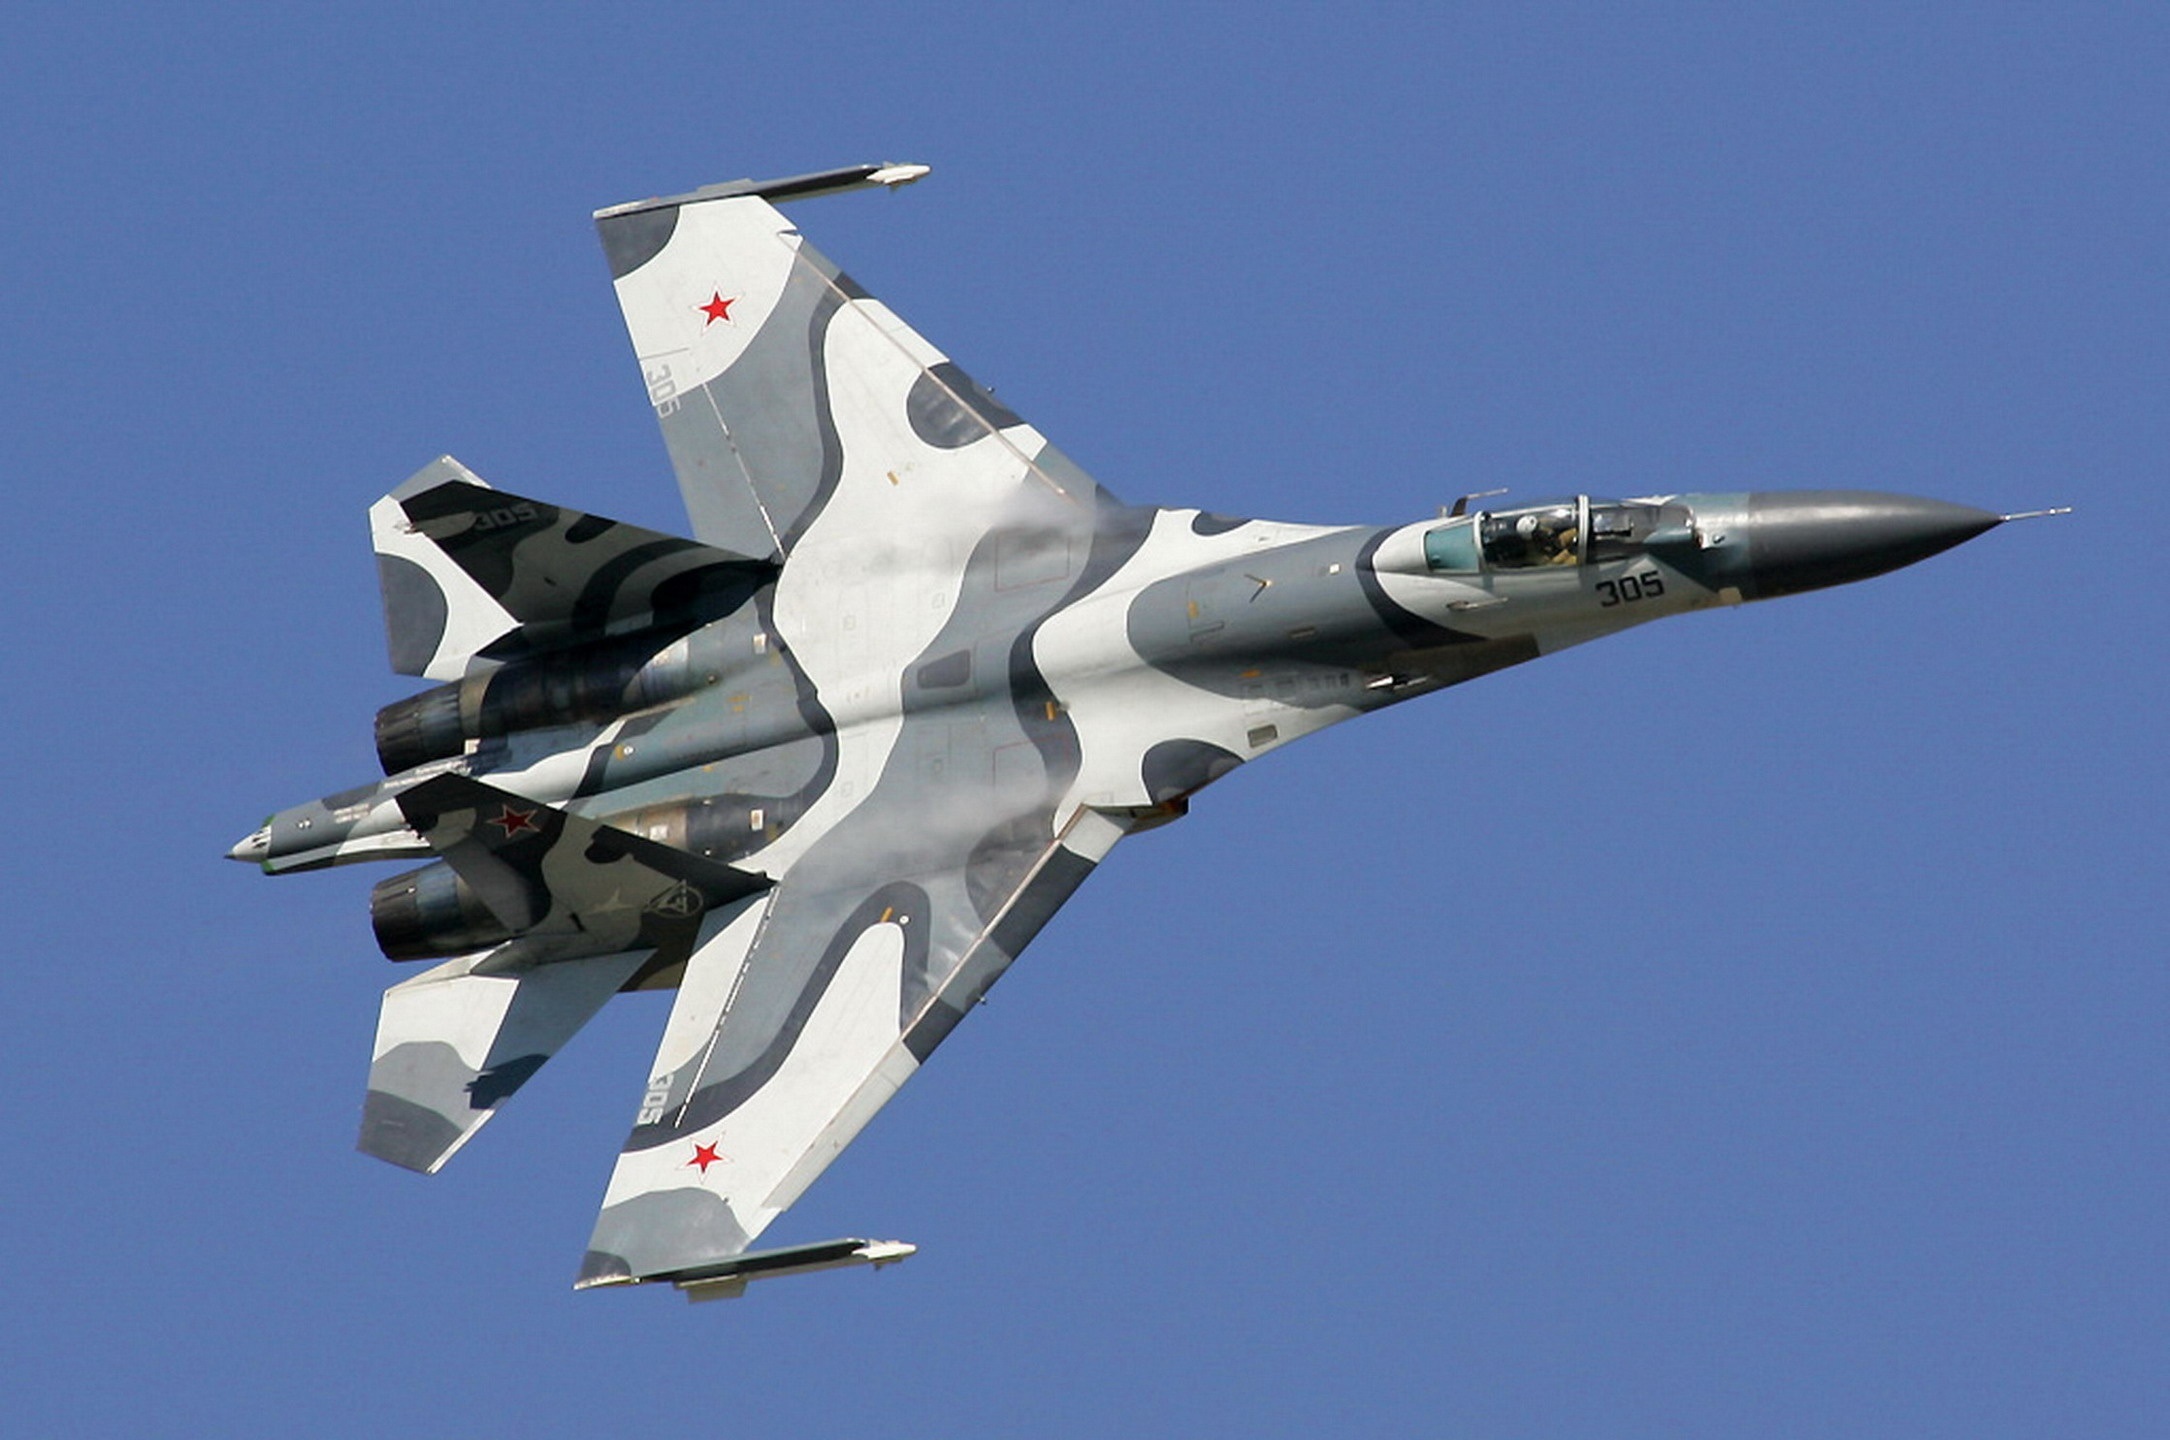 Sukhoi_Su-27SKM_at_MAKS-2005_airshow.jpg